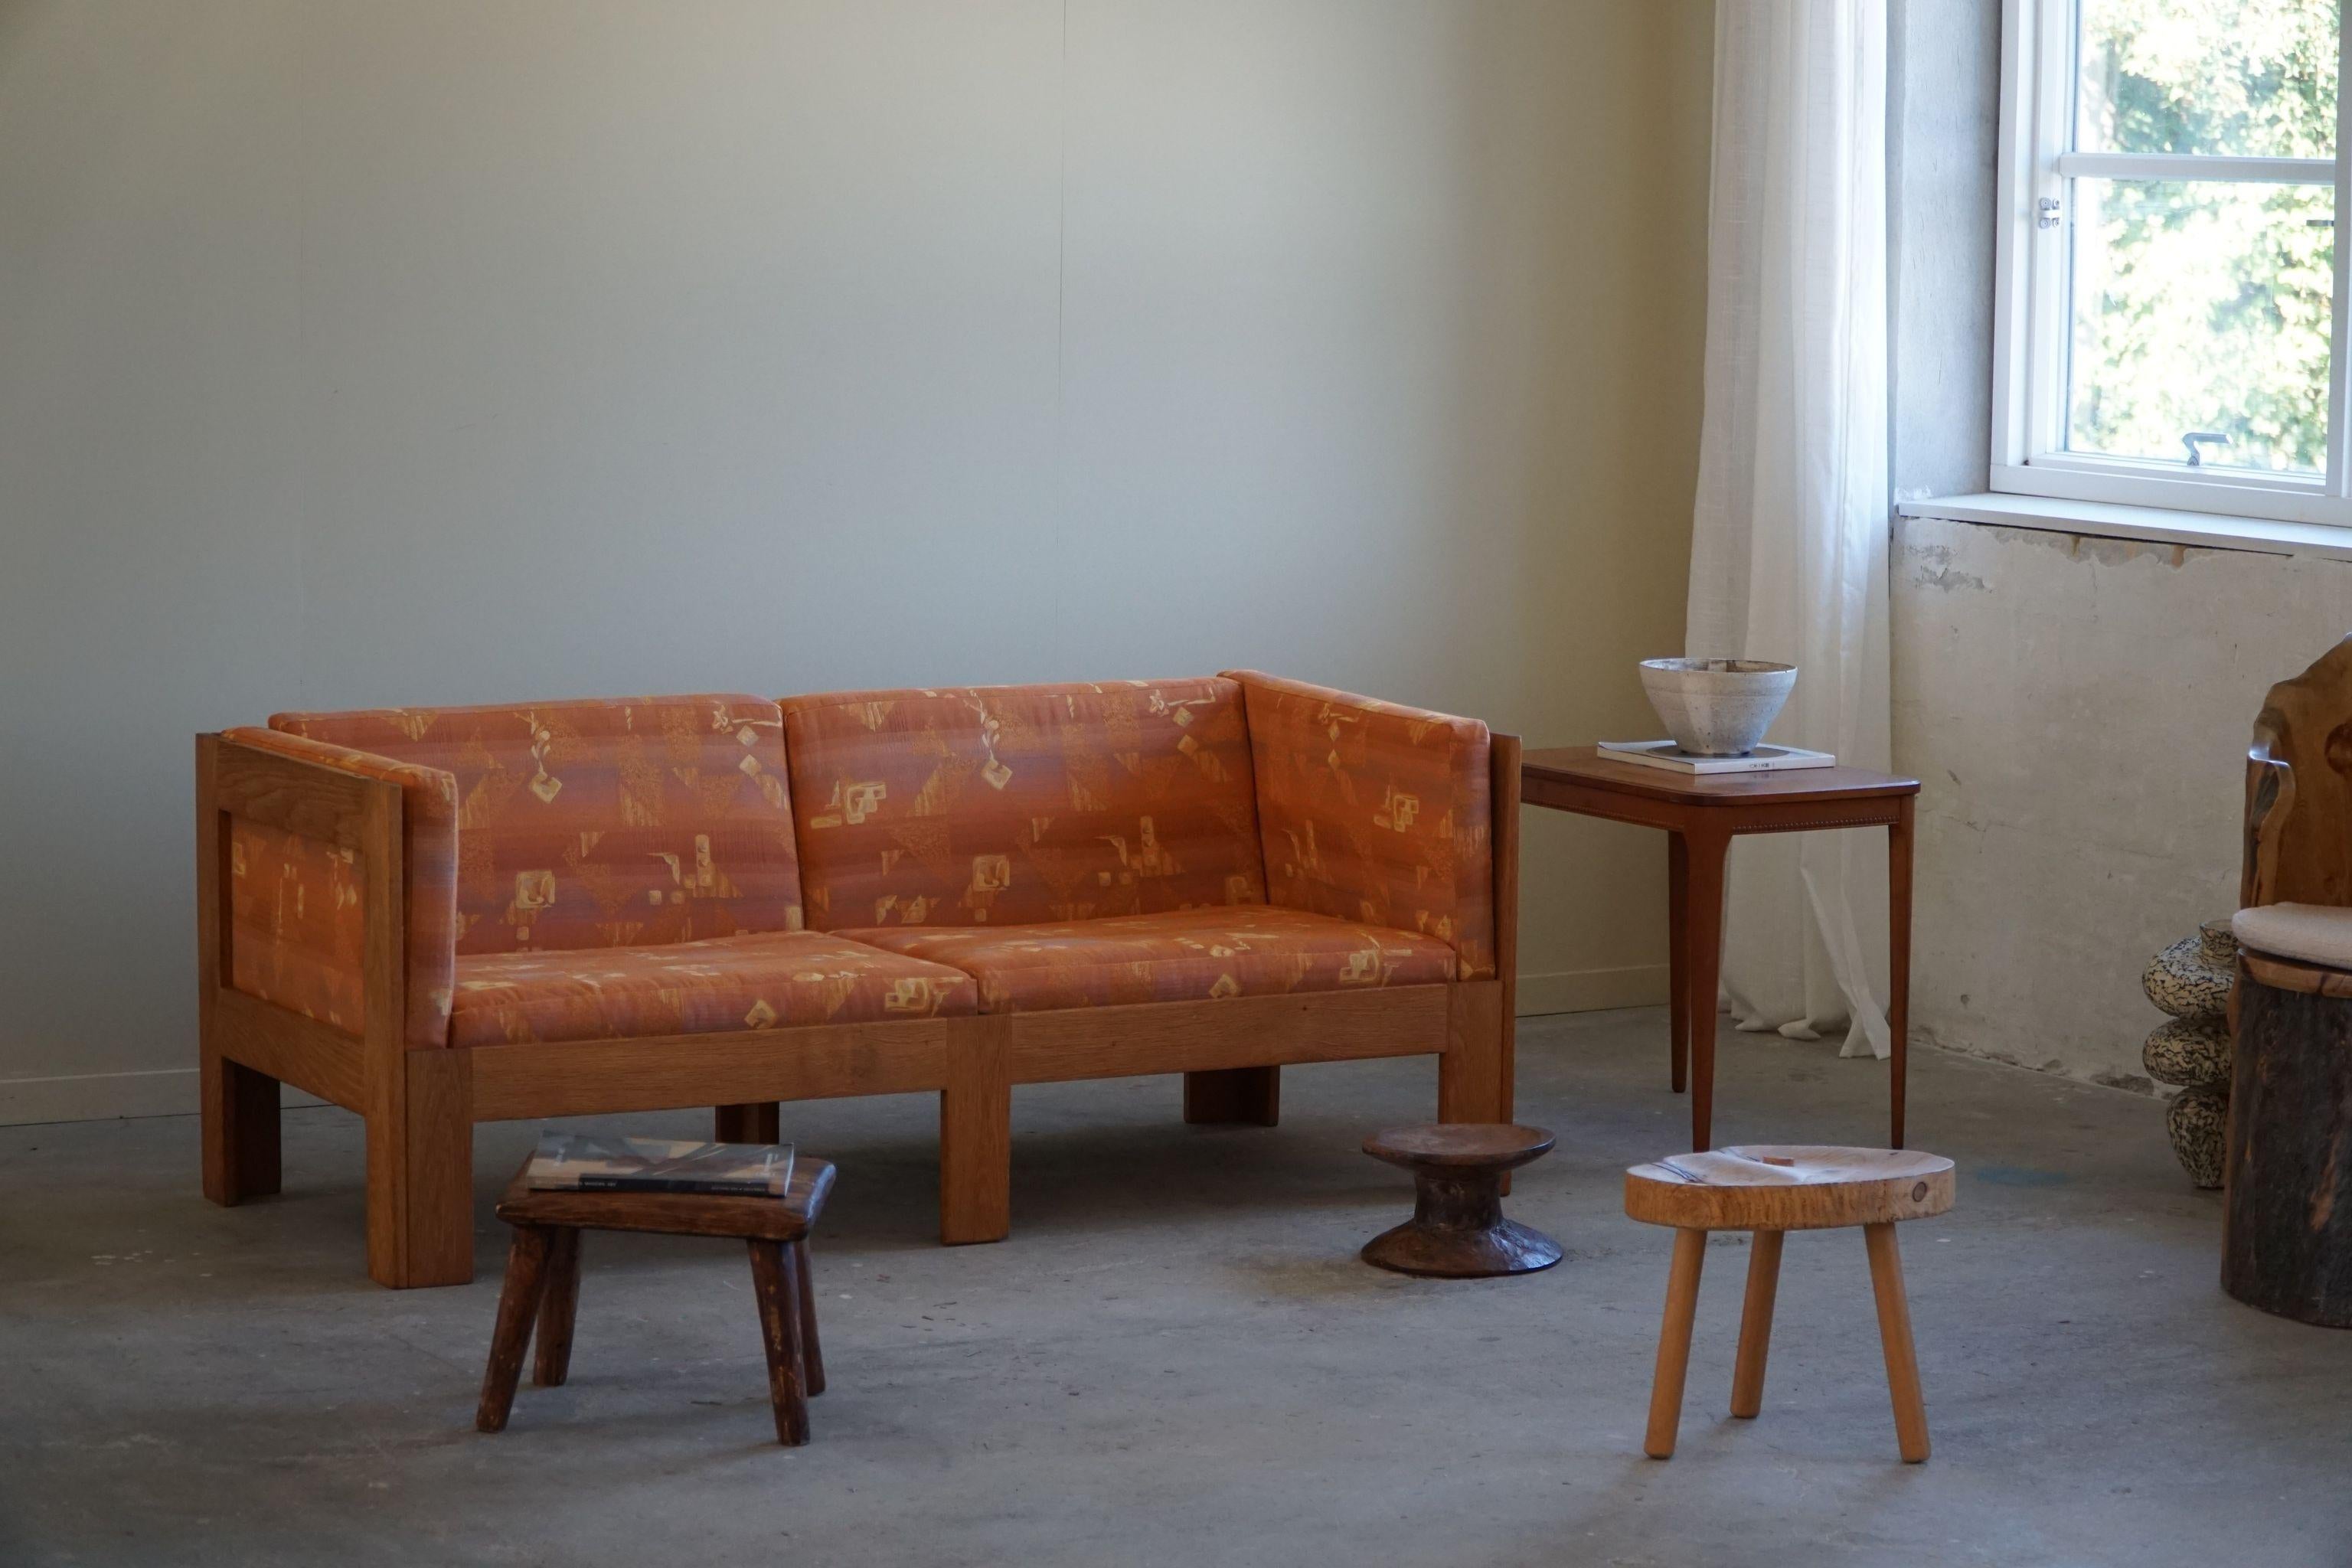 Charmant canapé 2 places en chêne, retapissé dans un tissu vintage stocké dans les années 1980. Conçu par l'architecte danois Tage Poulsen, modèle TP632. Conçue en 1962.

Ce canapé peut être autoportant et s'adapter à tout type de style d'intérieur.